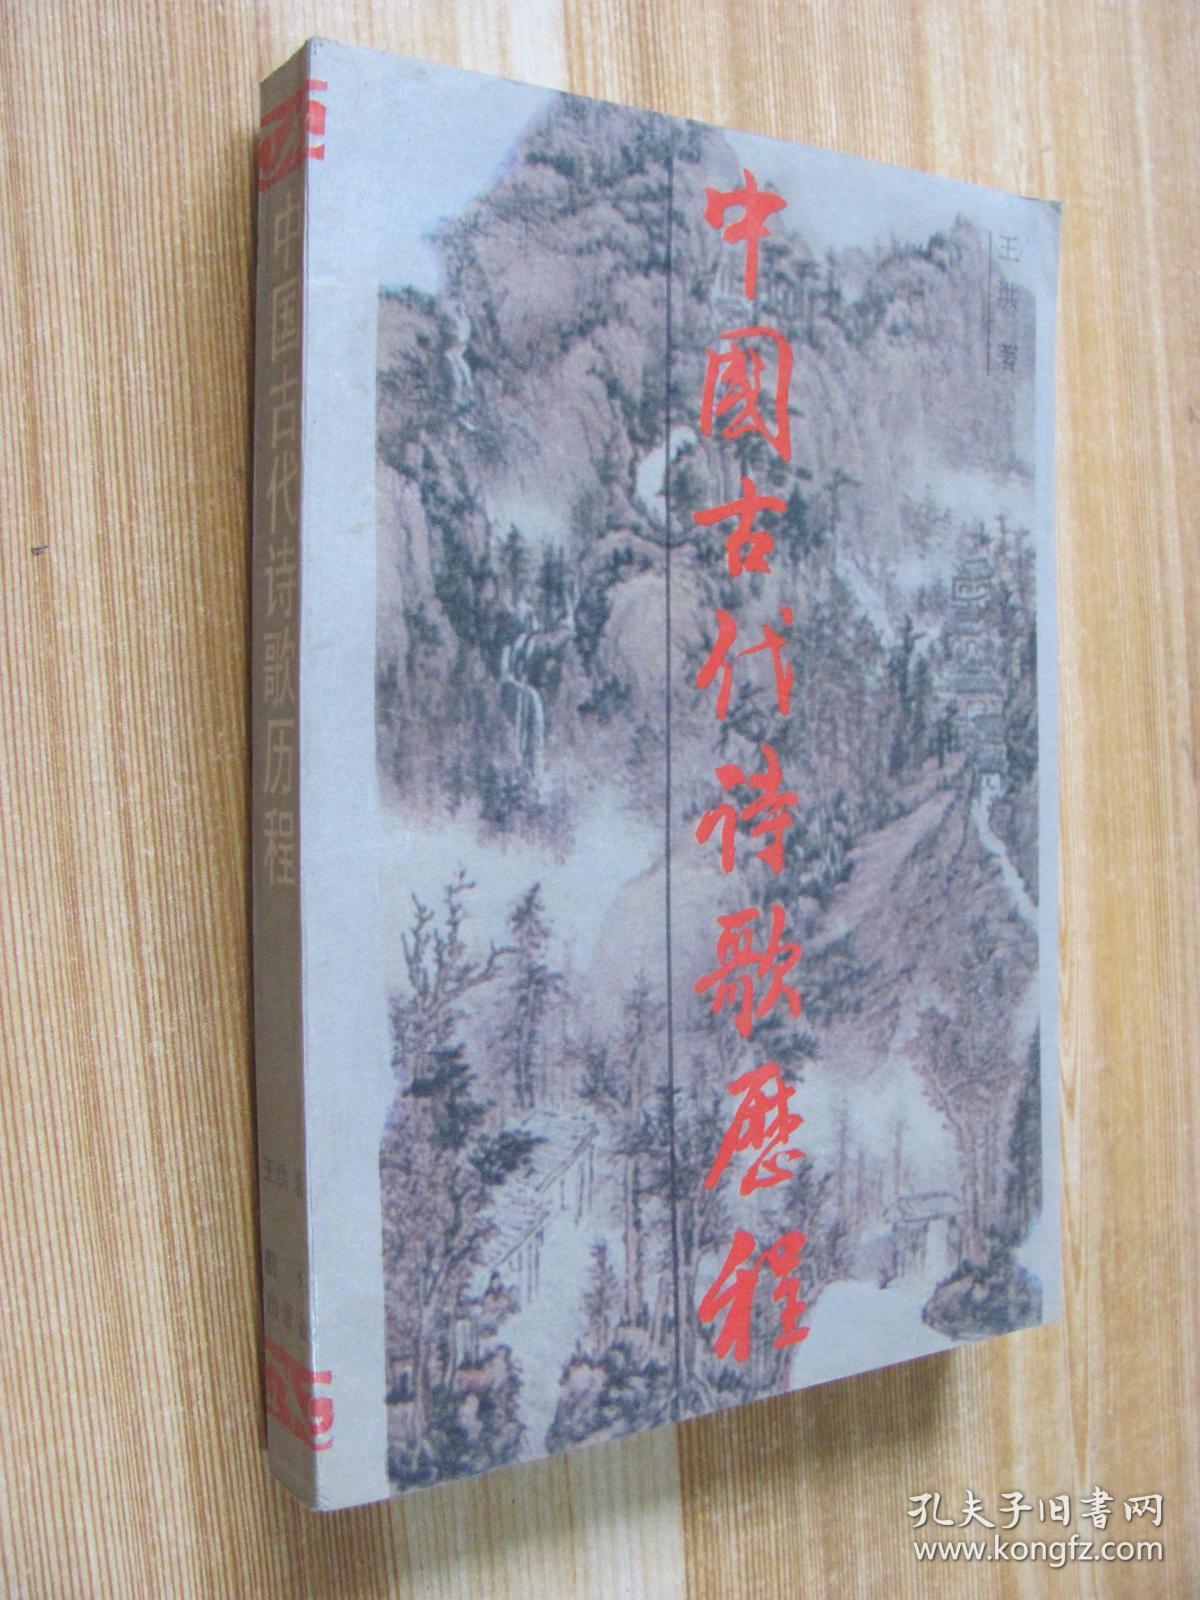 中国古代诗歌历程